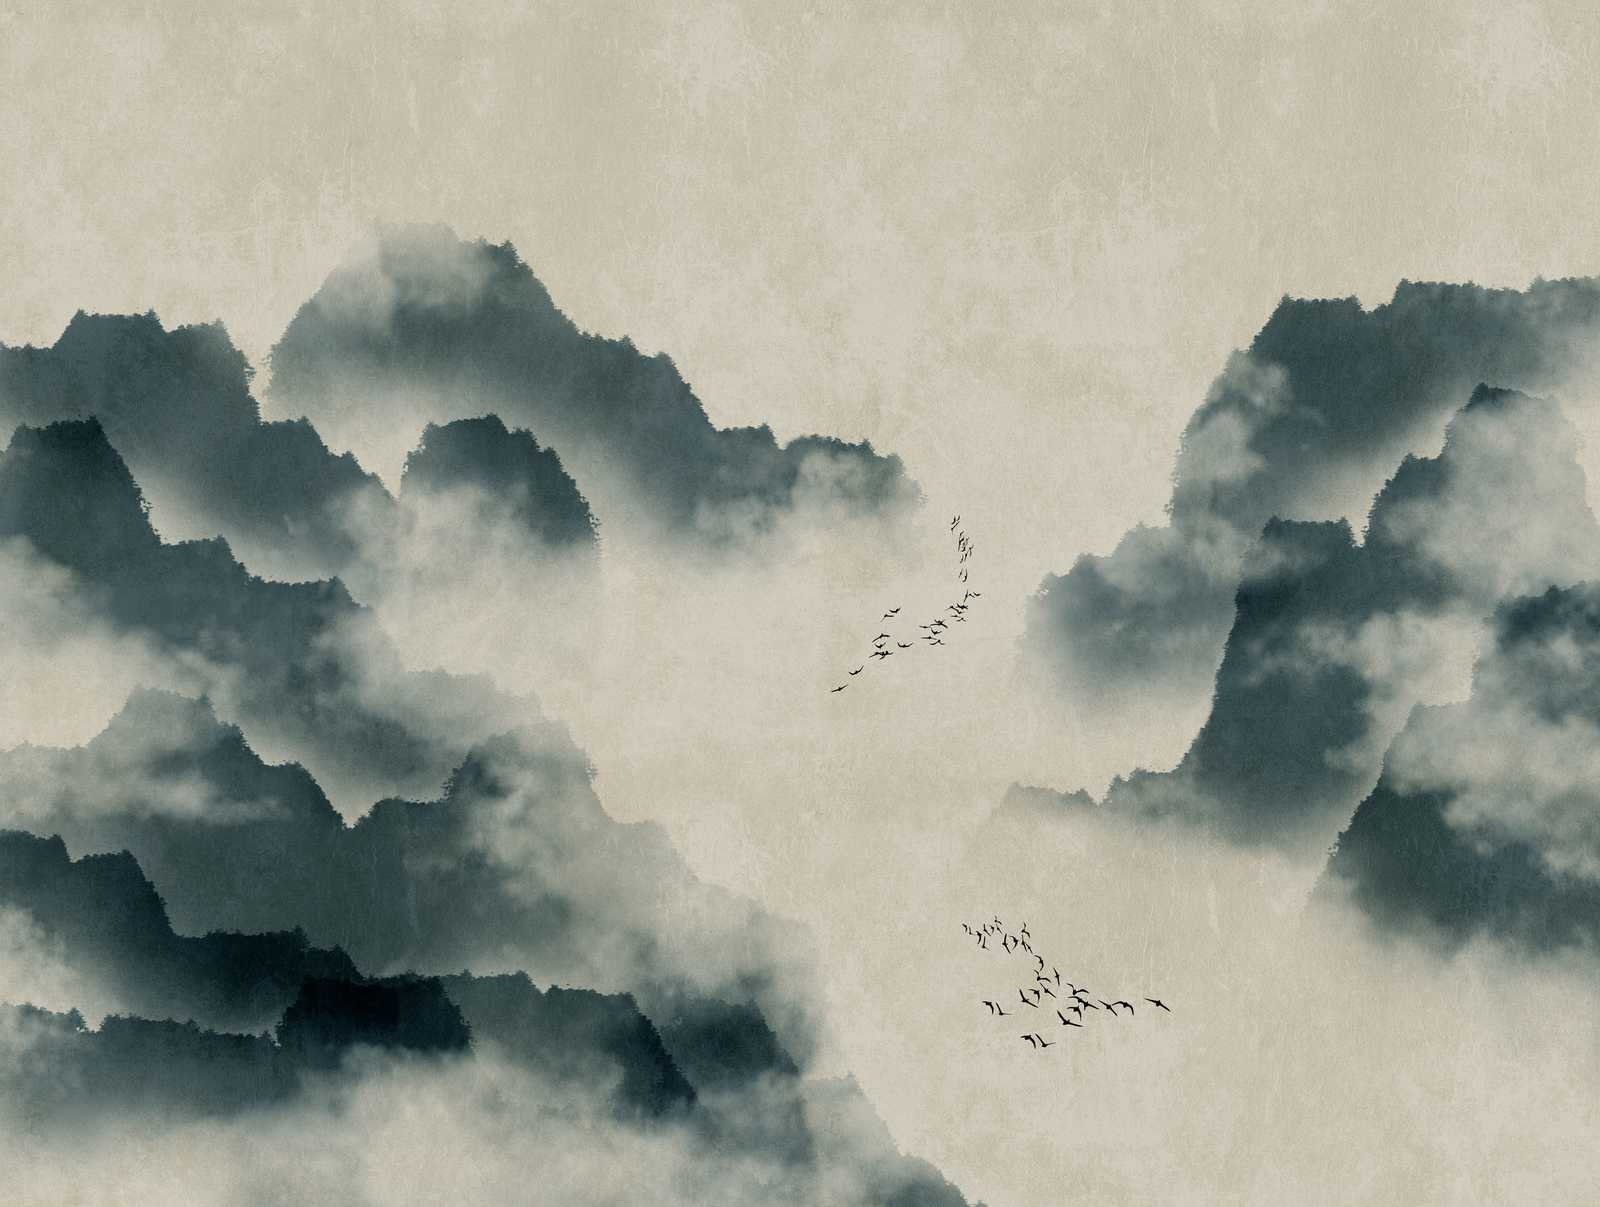             Tapeten Neuheit | Aquarell Motivtapete mit Bergen, Nebel & Vogelschwarm
        